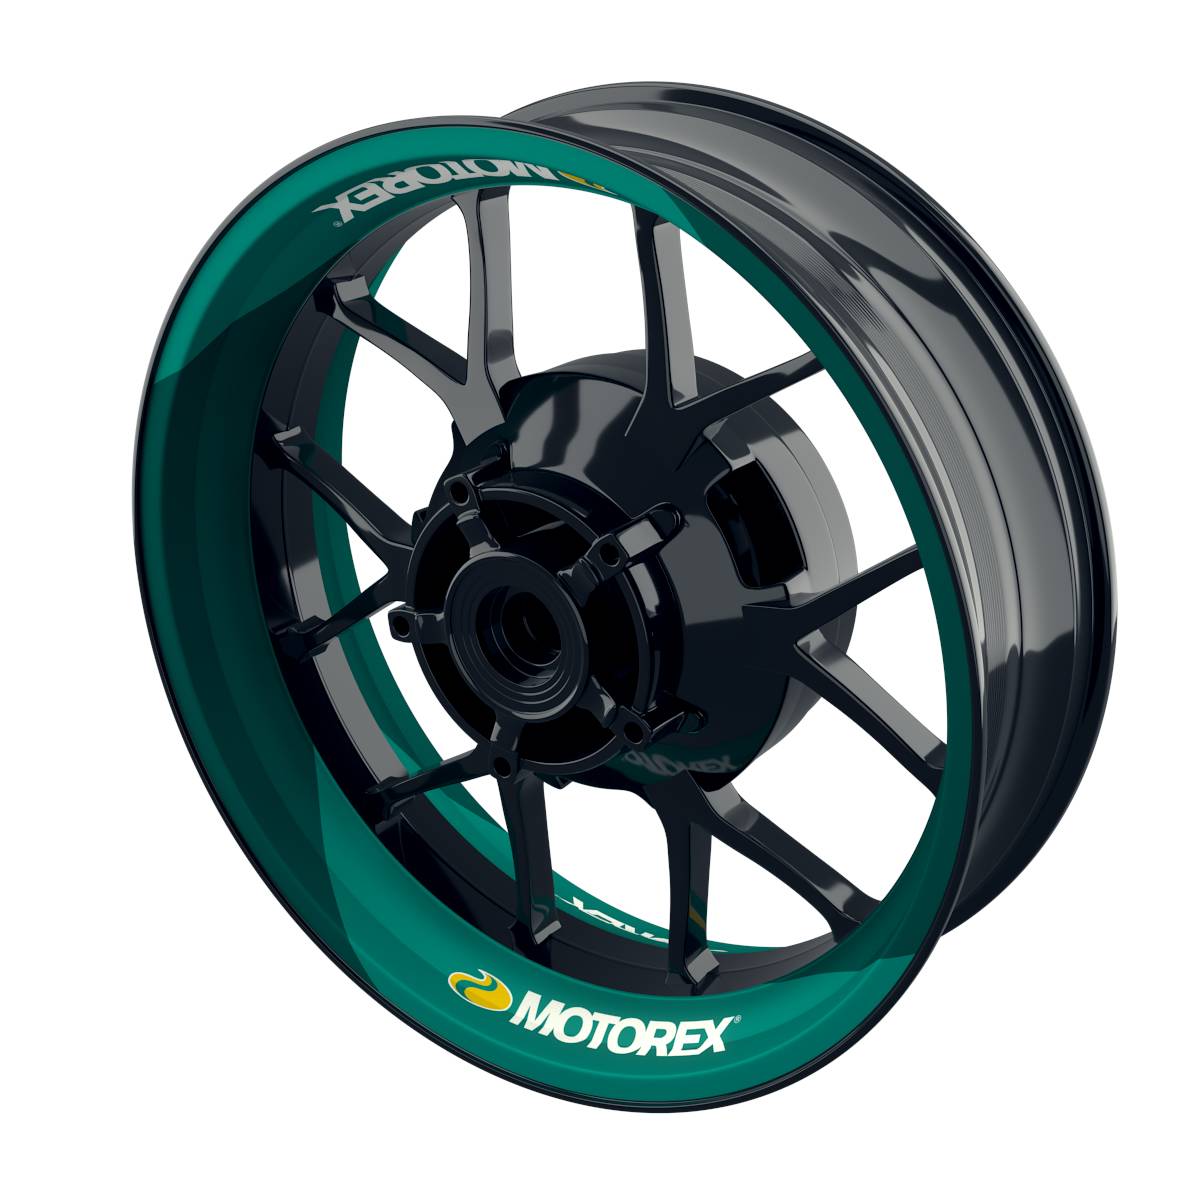 Motorex Rim Decals Motiv V1 Wheelsticker Premium